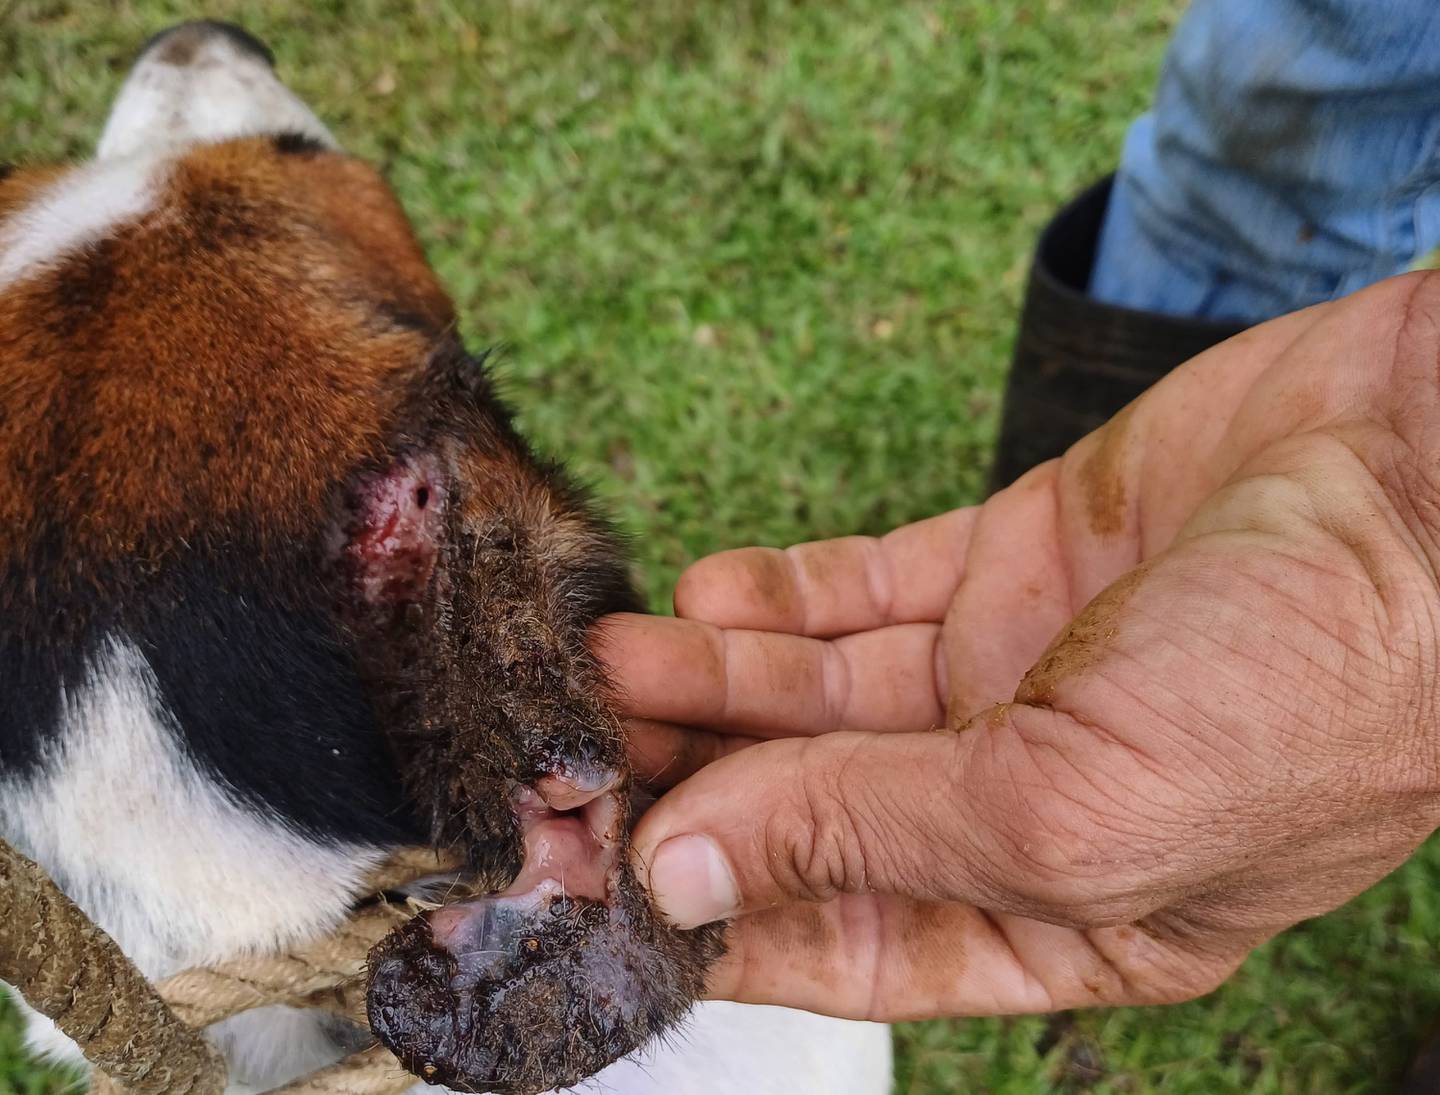 Gusano barrenador, primer caso de 2023, reintroducción de la enfermedad en Costa Rica